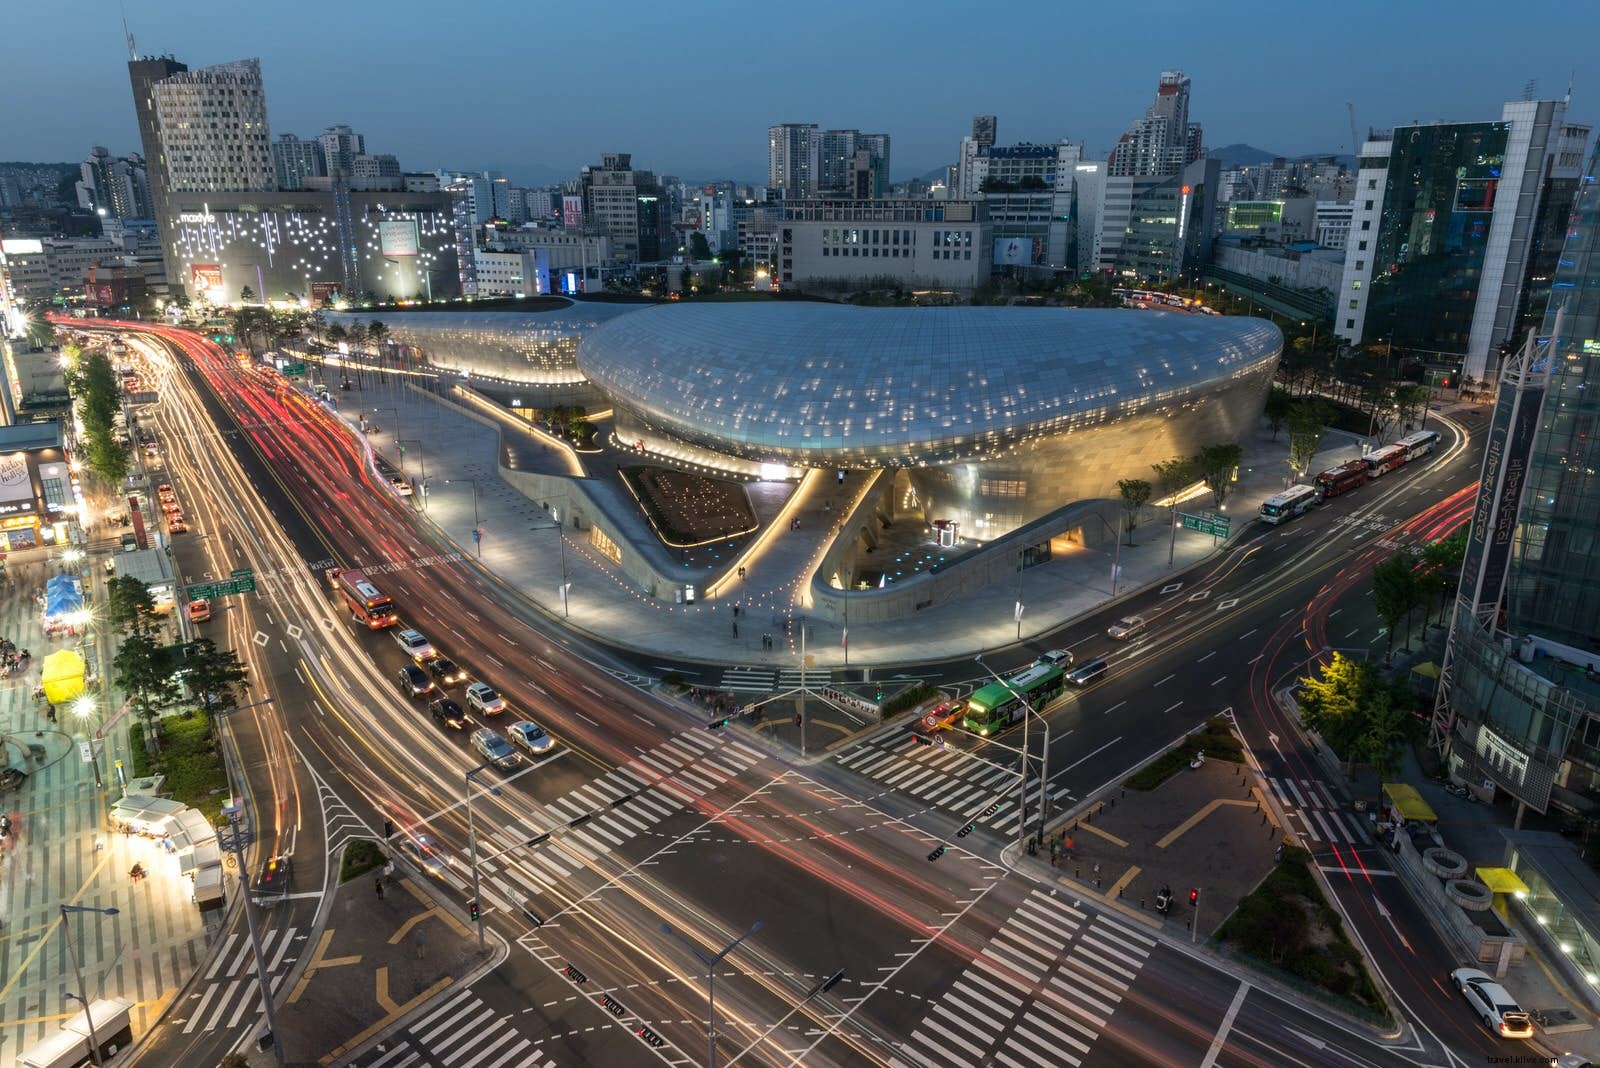 Il dinamico paesaggio urbano di Seoul:un tour architettonico attraverso la capitale sudcoreana 